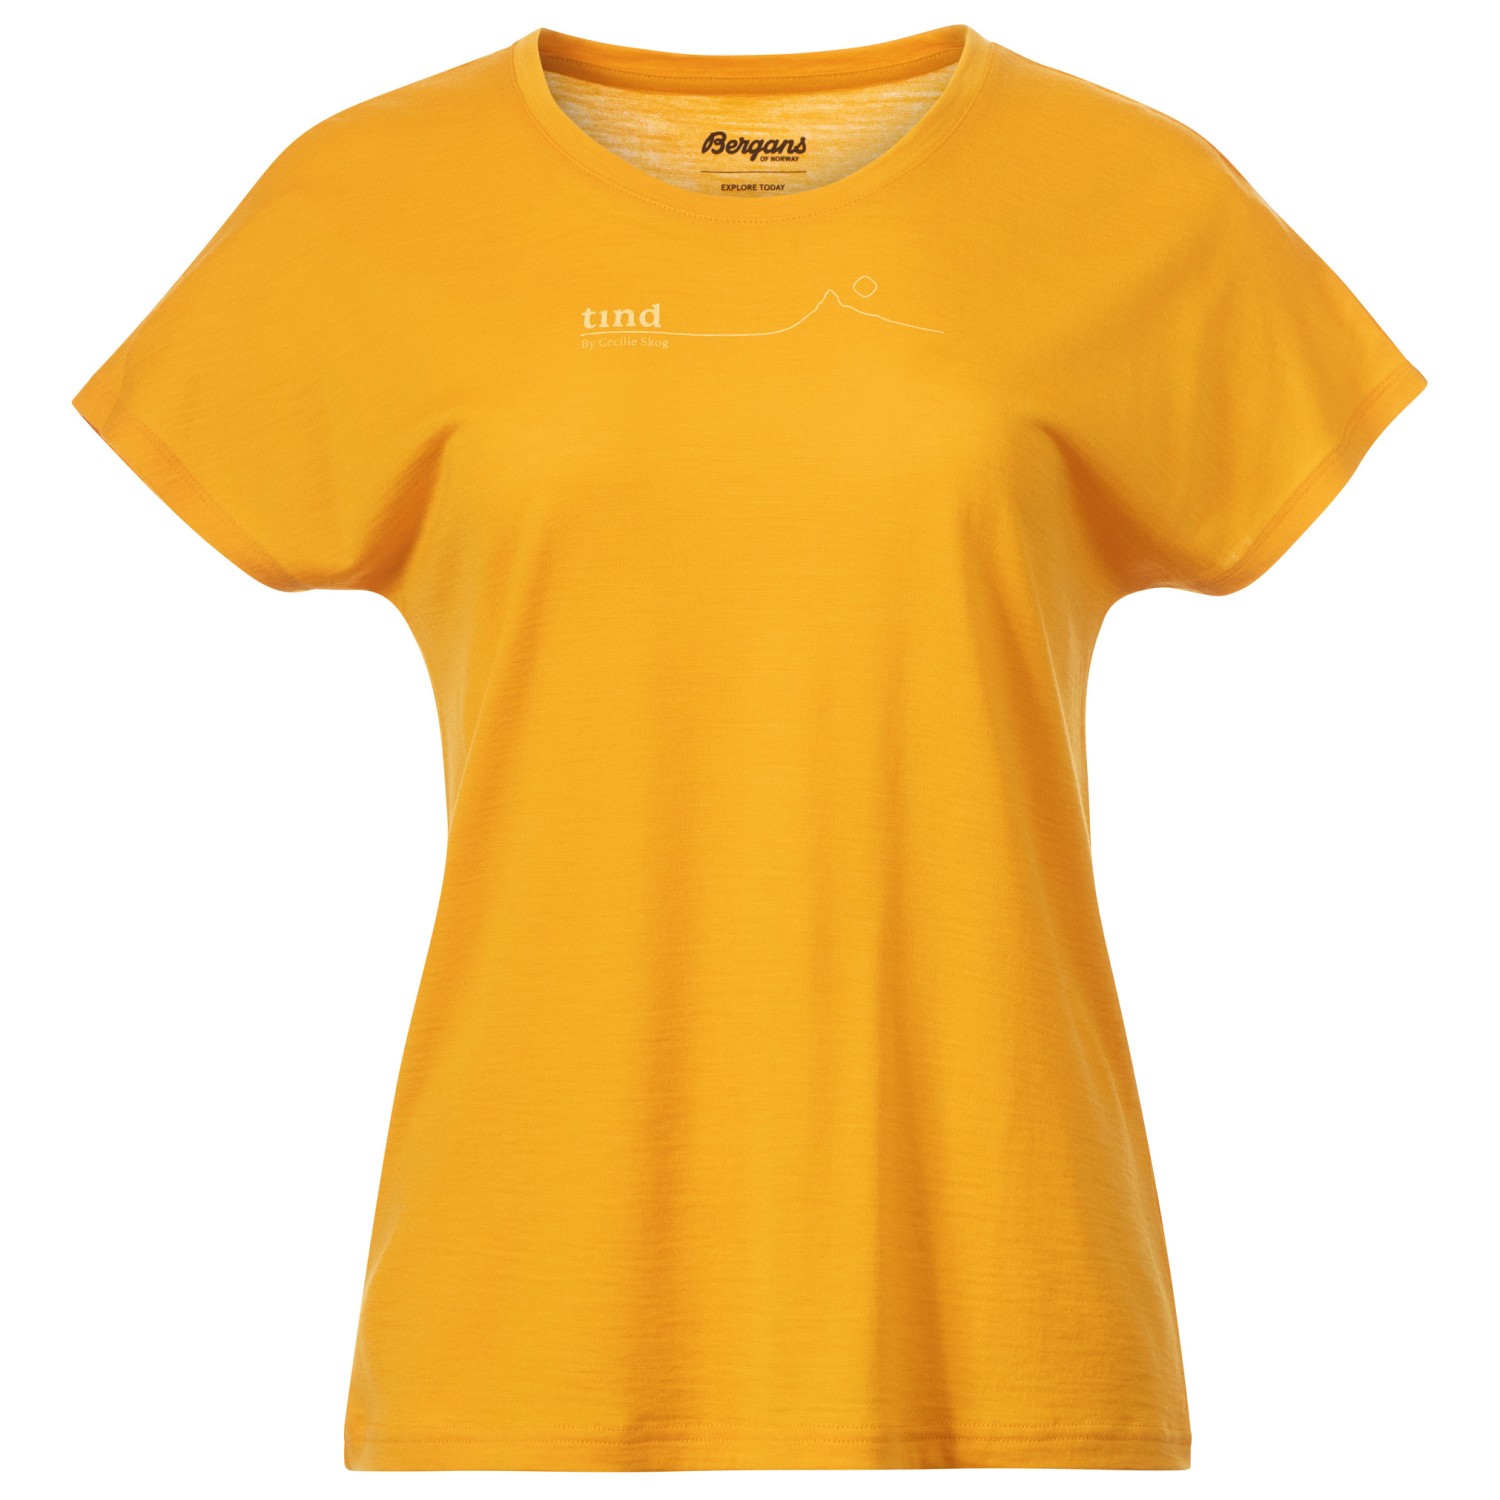 Рубашка из мериноса Bergans Women's Tind Crux Merino Tee, цвет Marigold Yellow/Buttercup Yellow Moon Peak